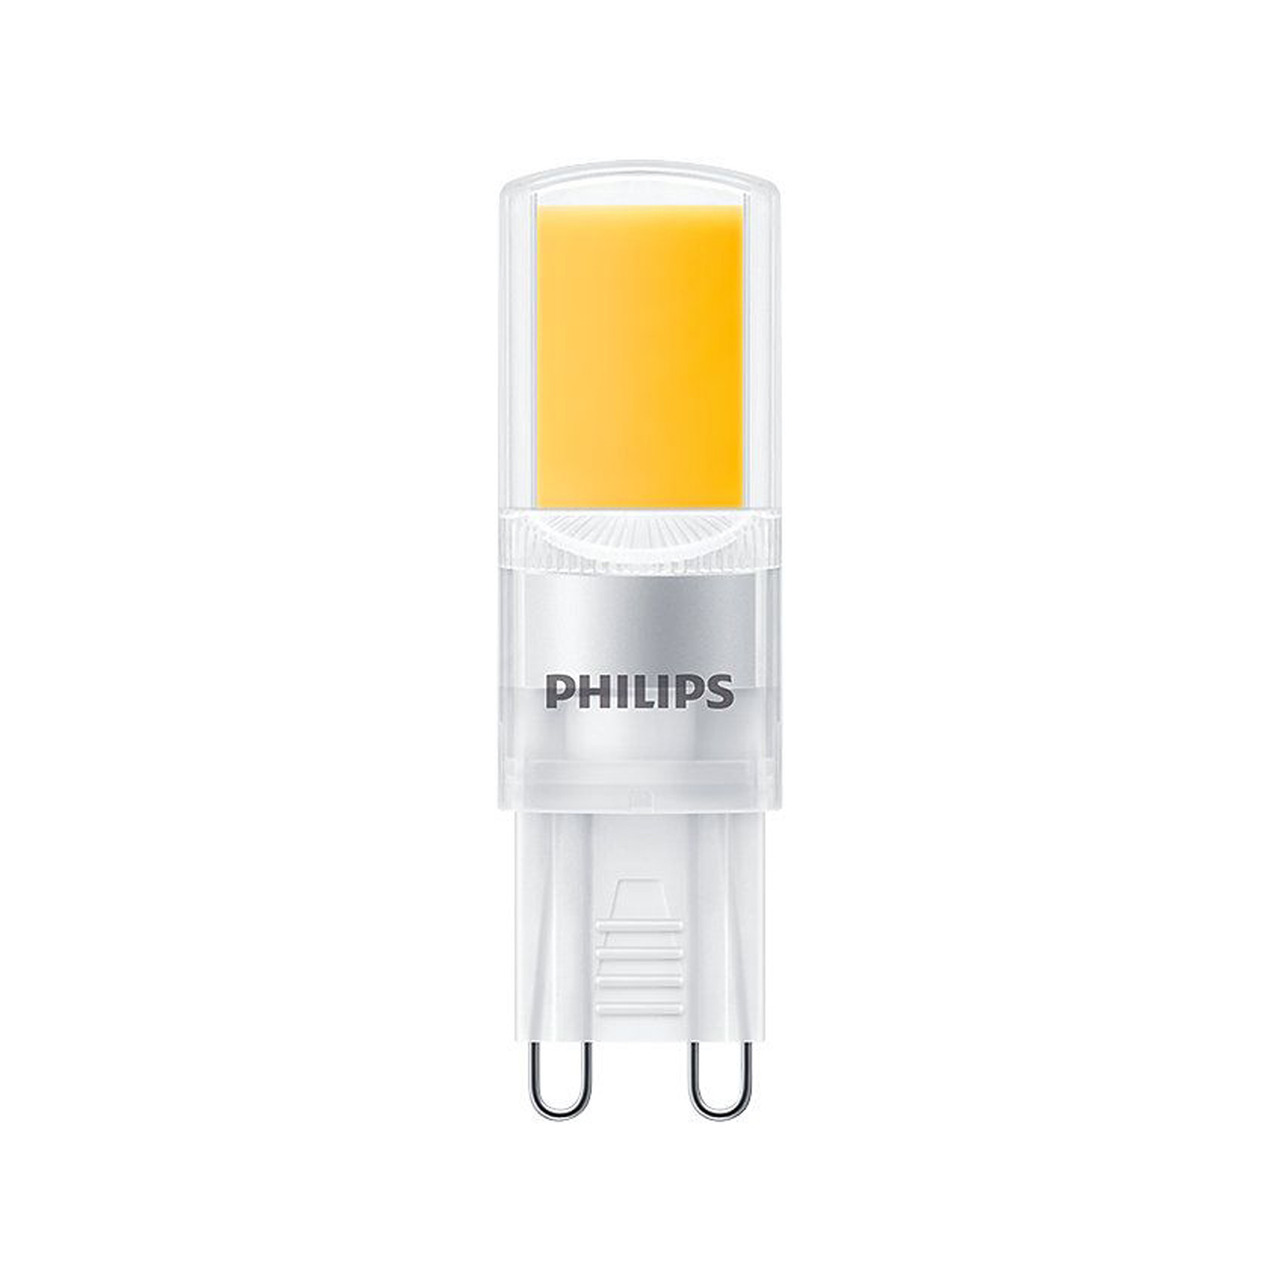 Philips 3-2-W-G9-LED-Lampe CorePro LEDcapsule- Stiftsockellampe- 400 lm- warmweiss- 2700 K